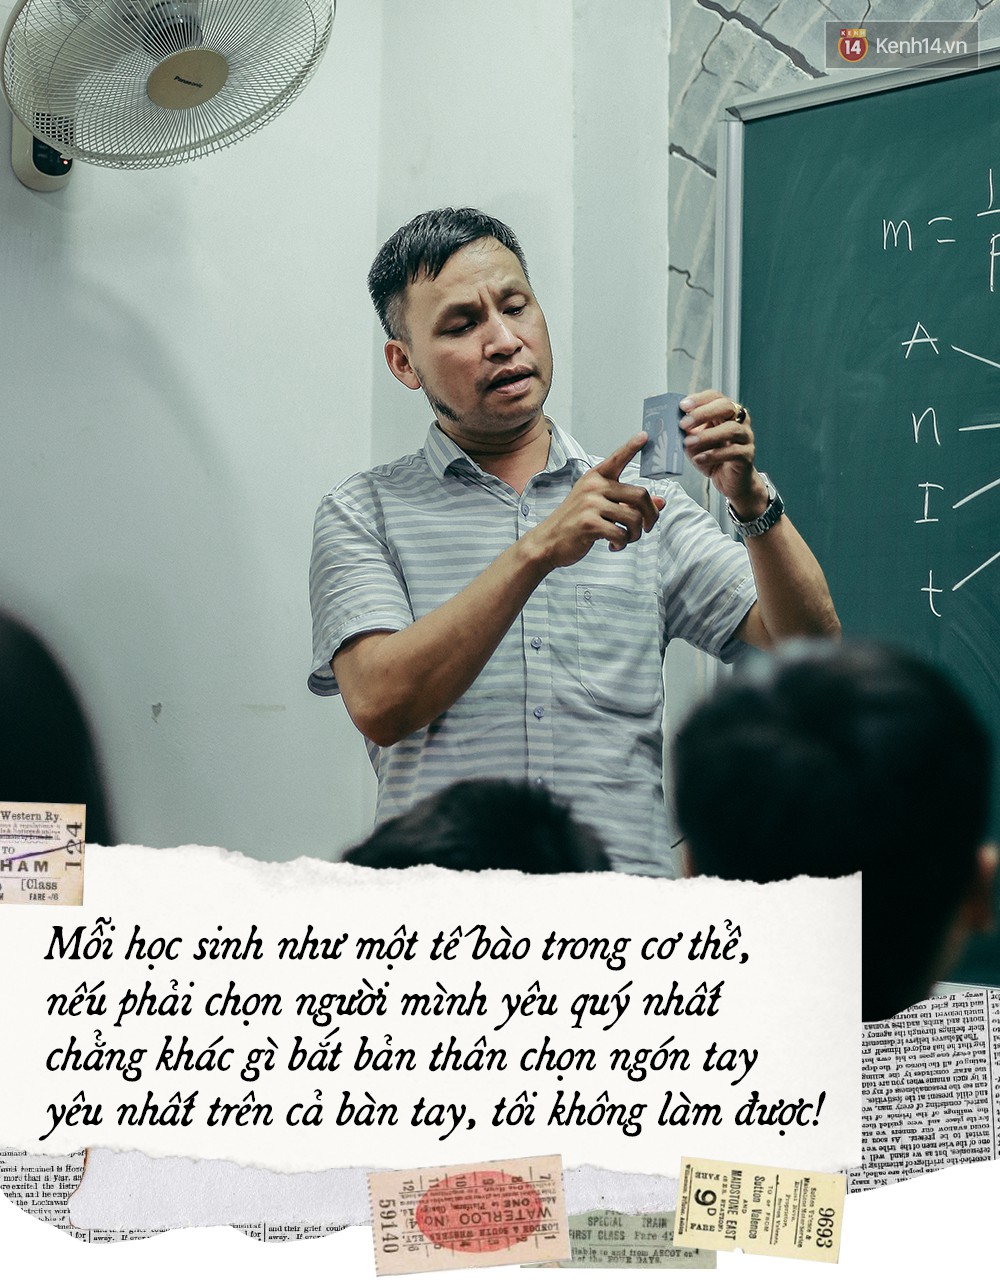 Thầy giáo Thiên hạ đệ nhất dạy Lý Dương Văn Cẩn: Người kinh doanh Dịch Vụ Cười với tiêu chí Dạy môn Vật Lý nên không vô lý được đâu-7